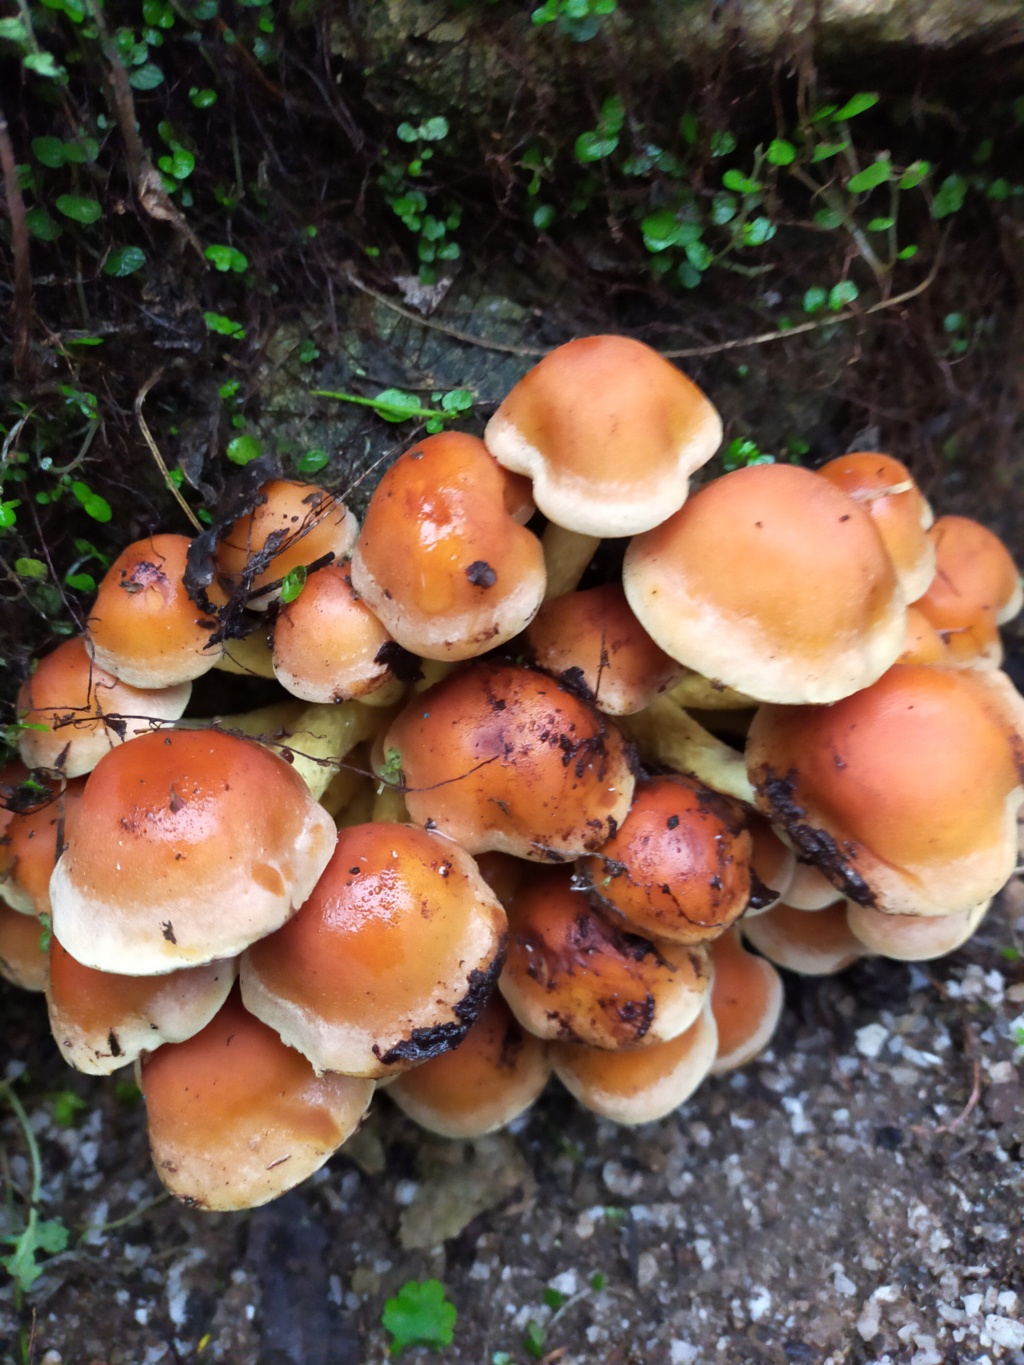 Hypholomes - Coprins - Polypores /Michou... trois champignons dans son jardin a définir...???? Img22867